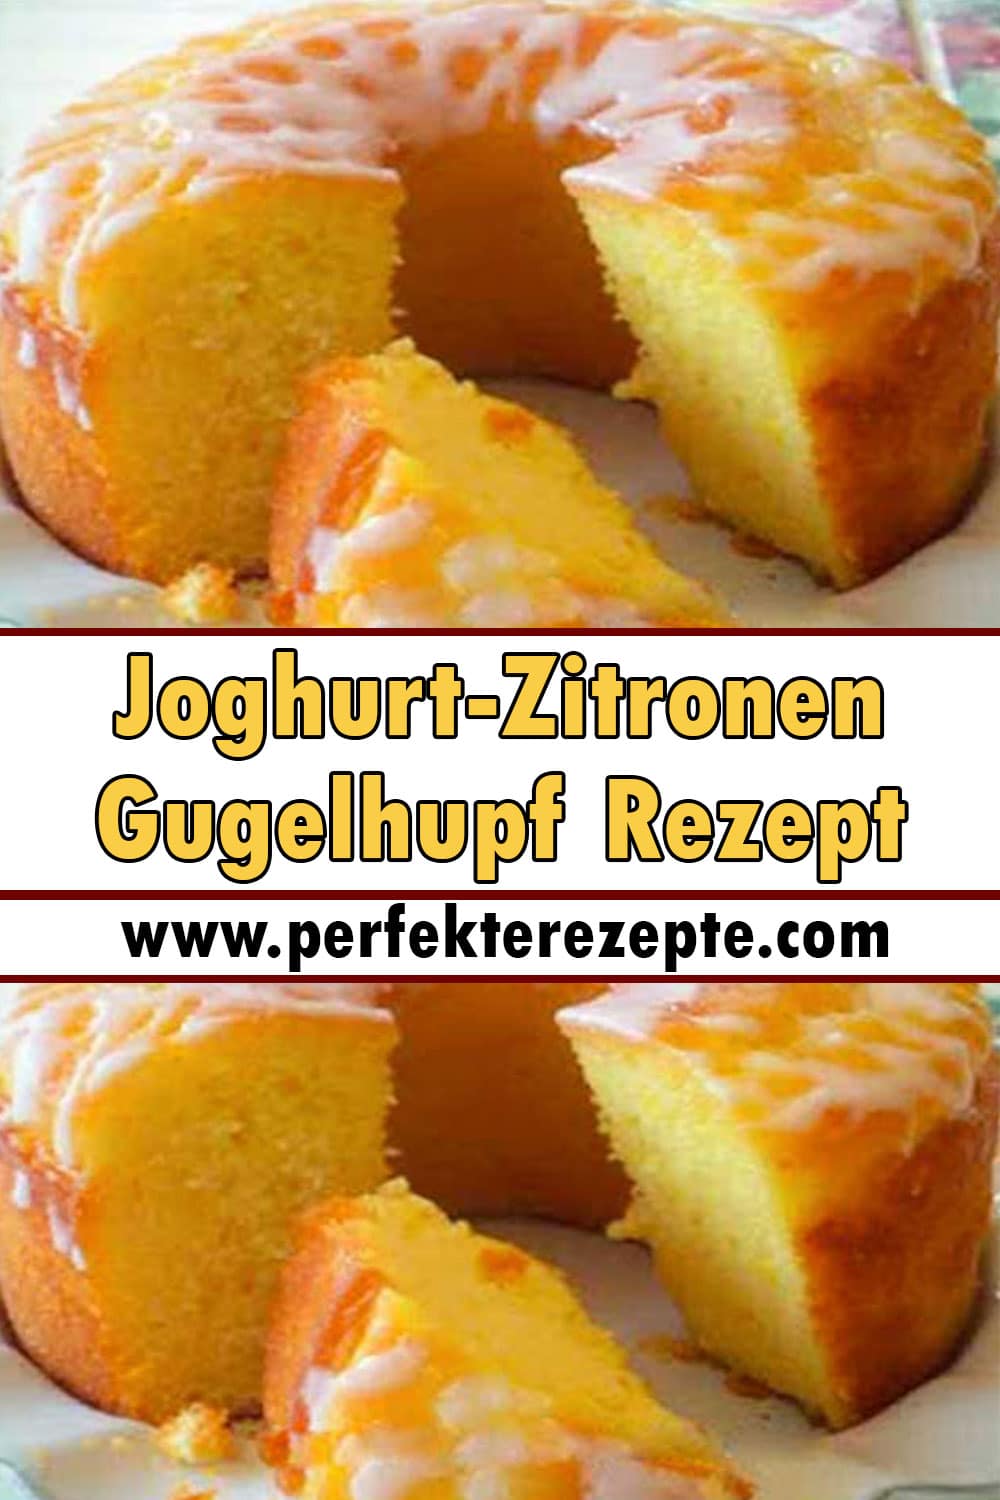 Joghurt-Zitronen-Gugelhupf Rezept